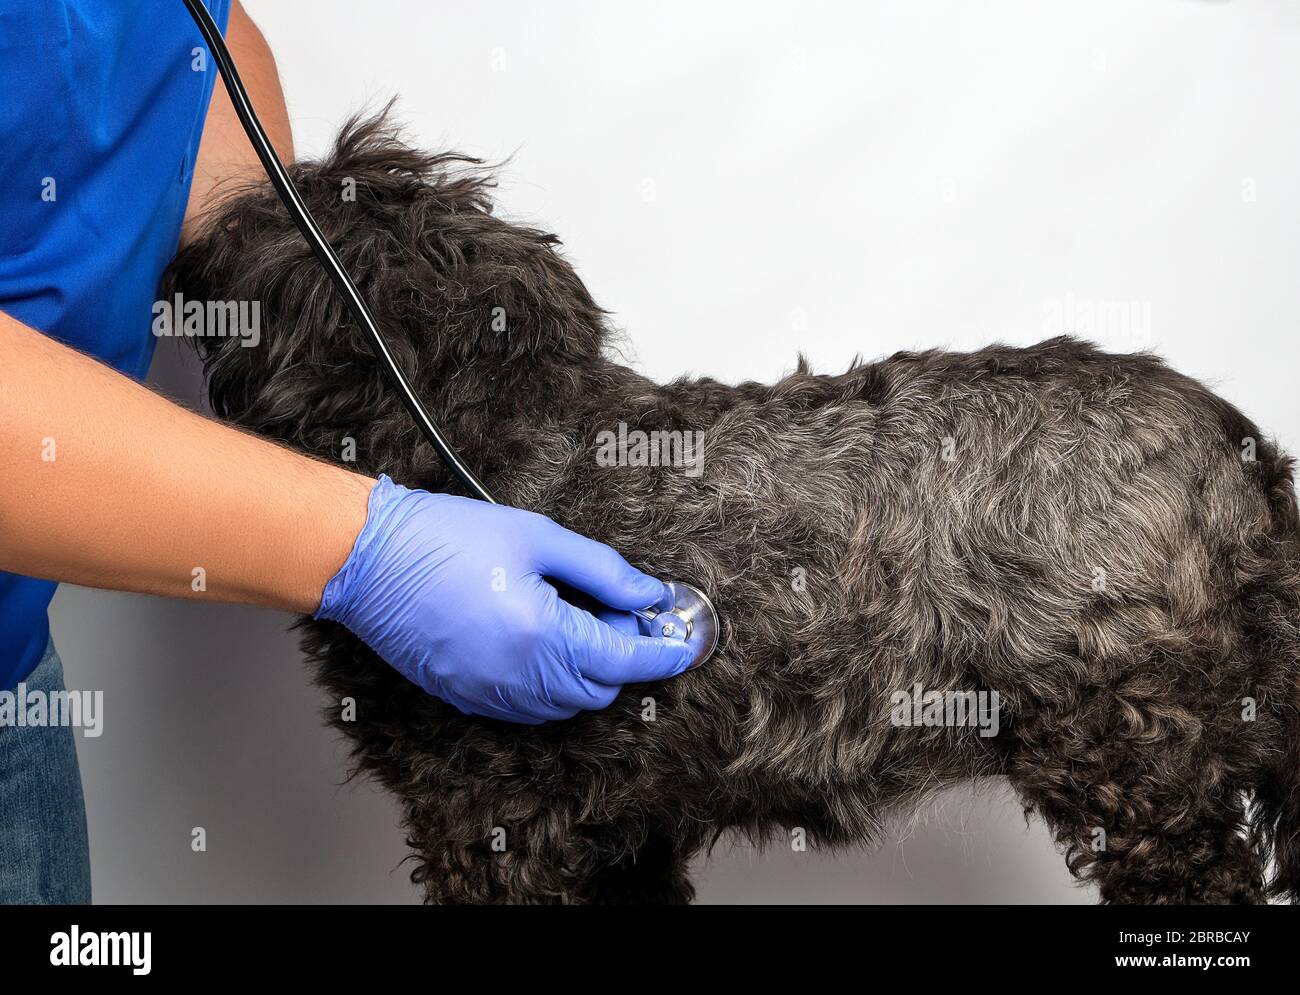 Vétérinaire dans un uniforme bleu bugs la pulsation d'un moelleux, chien noir concept de traiter les animaux à la clinique Banque D'Images